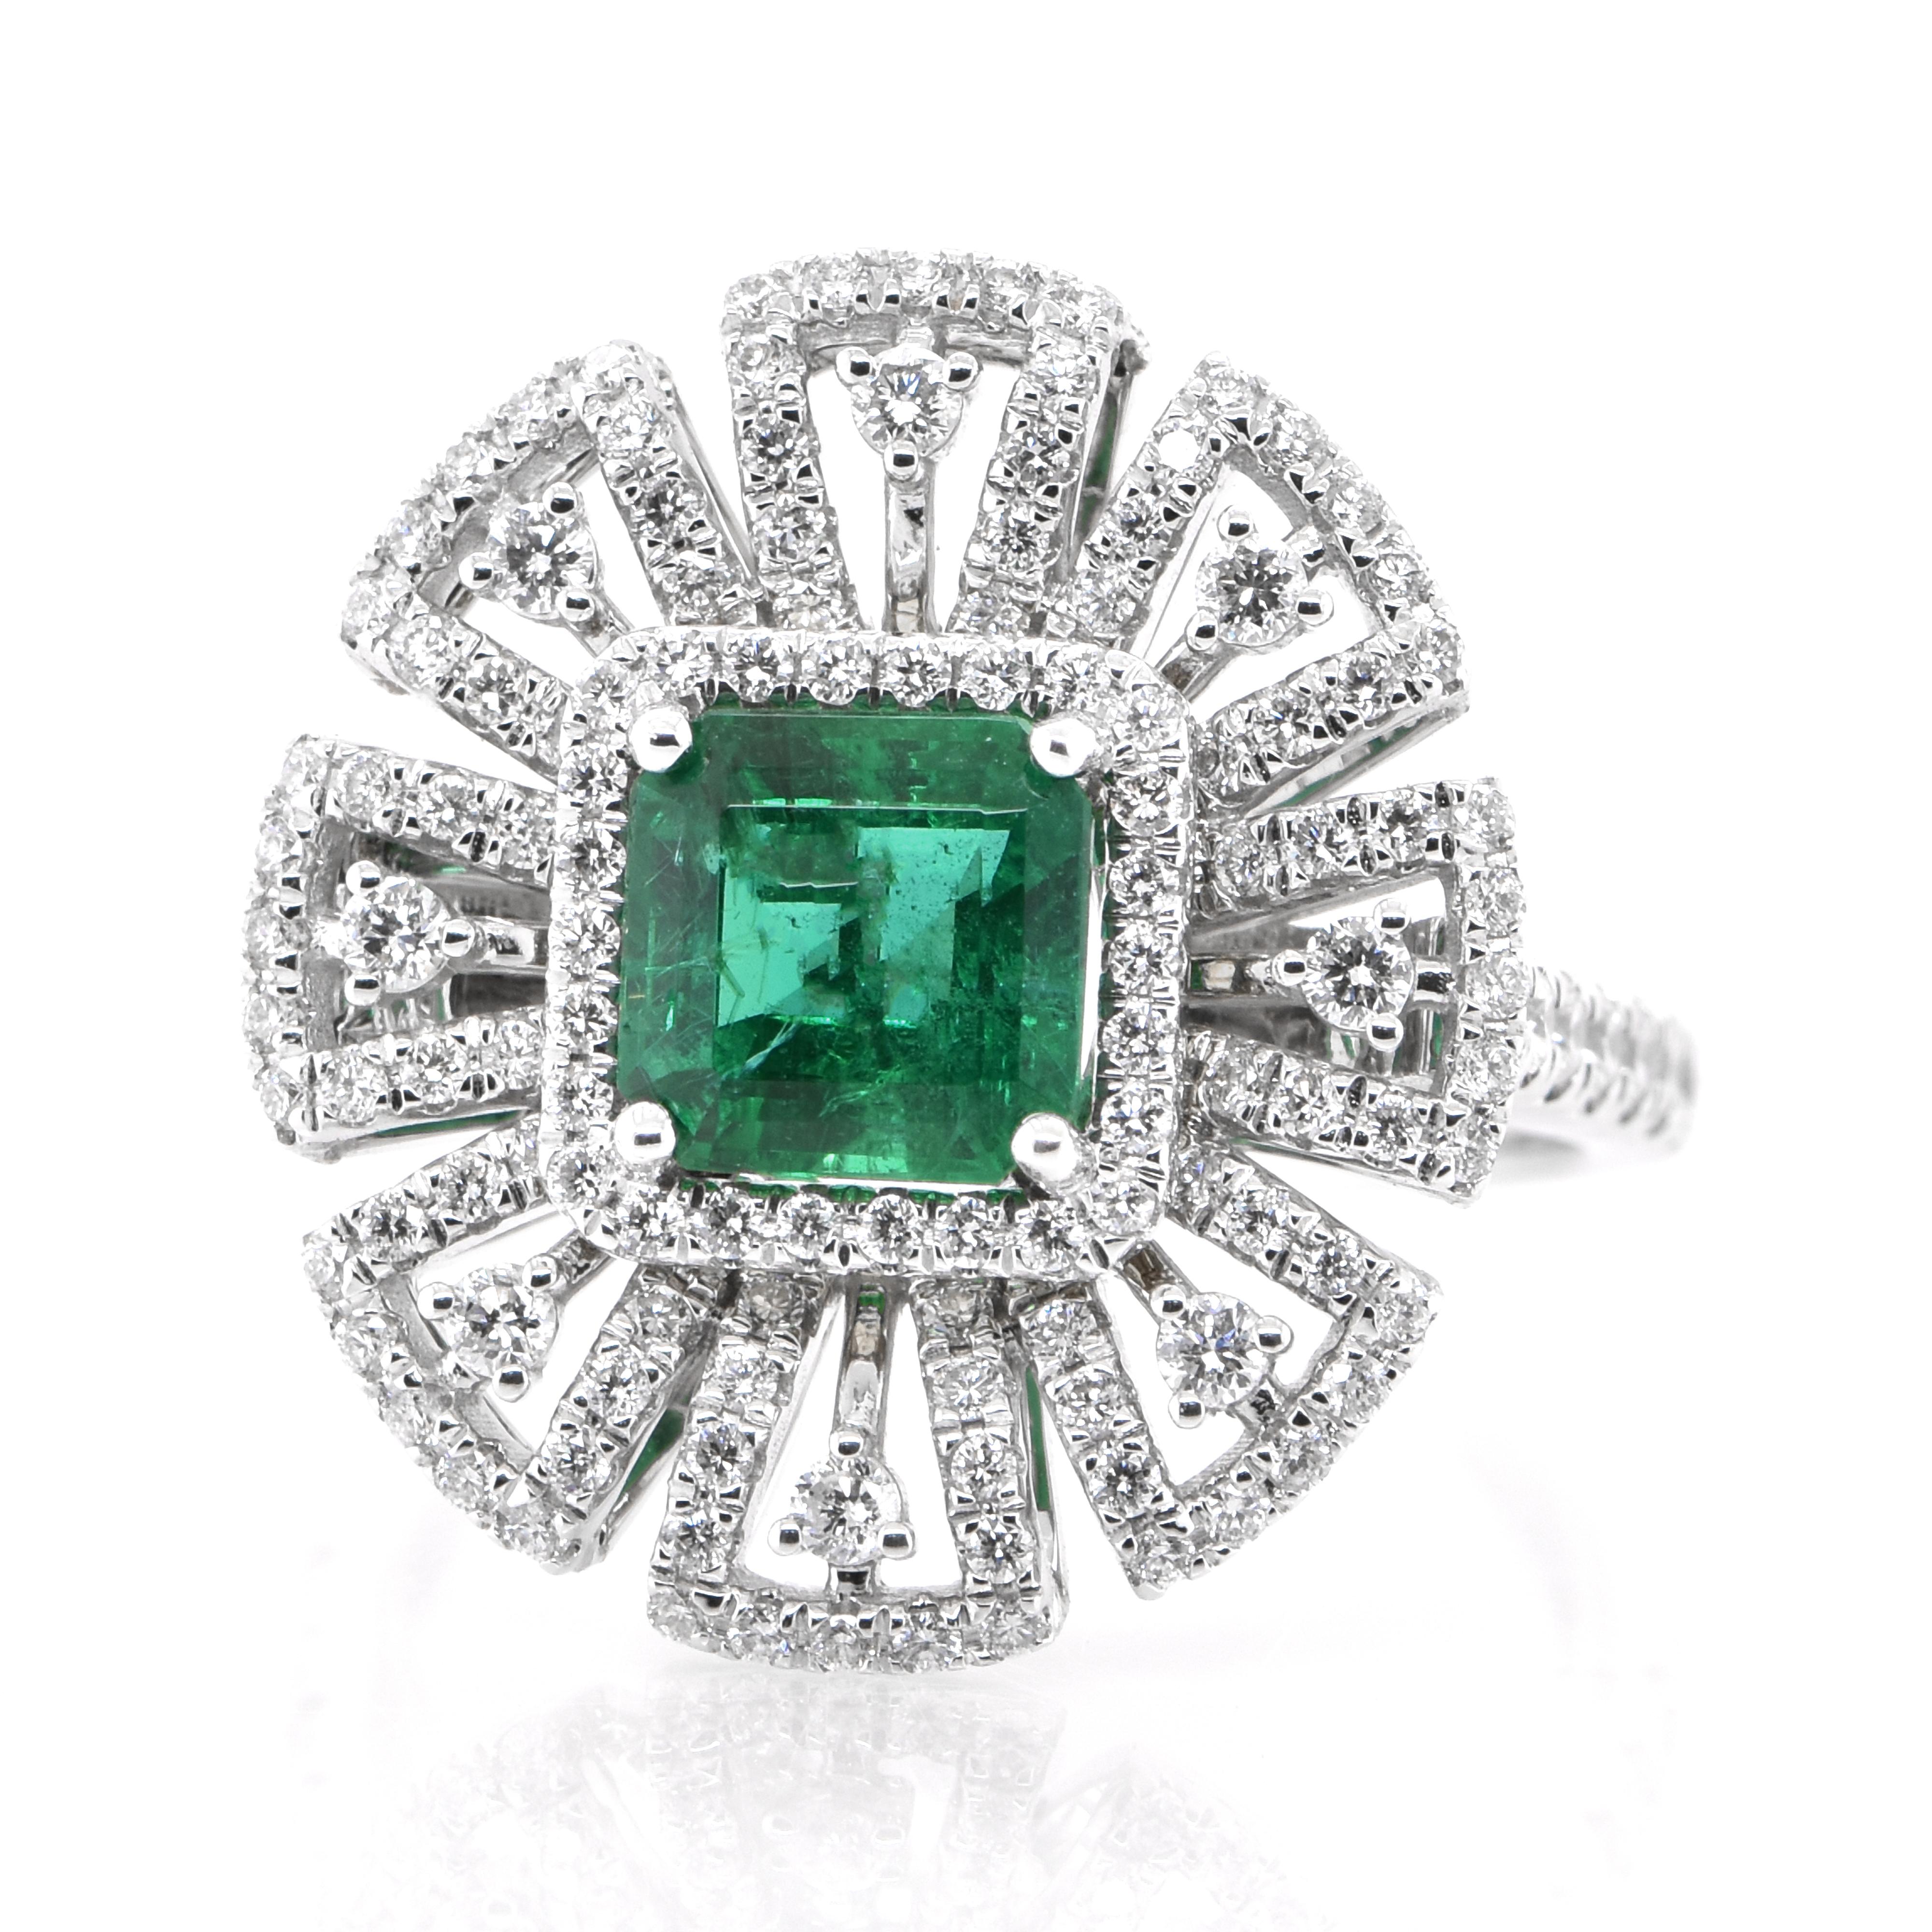 Ein atemberaubender Ring mit einem natürlichen Smaragd von 1,19 Karat und Diamanten von 0,82 Karat, gefasst in 18 Karat Weißgold. Seit Tausenden von Jahren bewundern die Menschen das Grün des Smaragds. Smaragde werden seit jeher mit den üppigsten